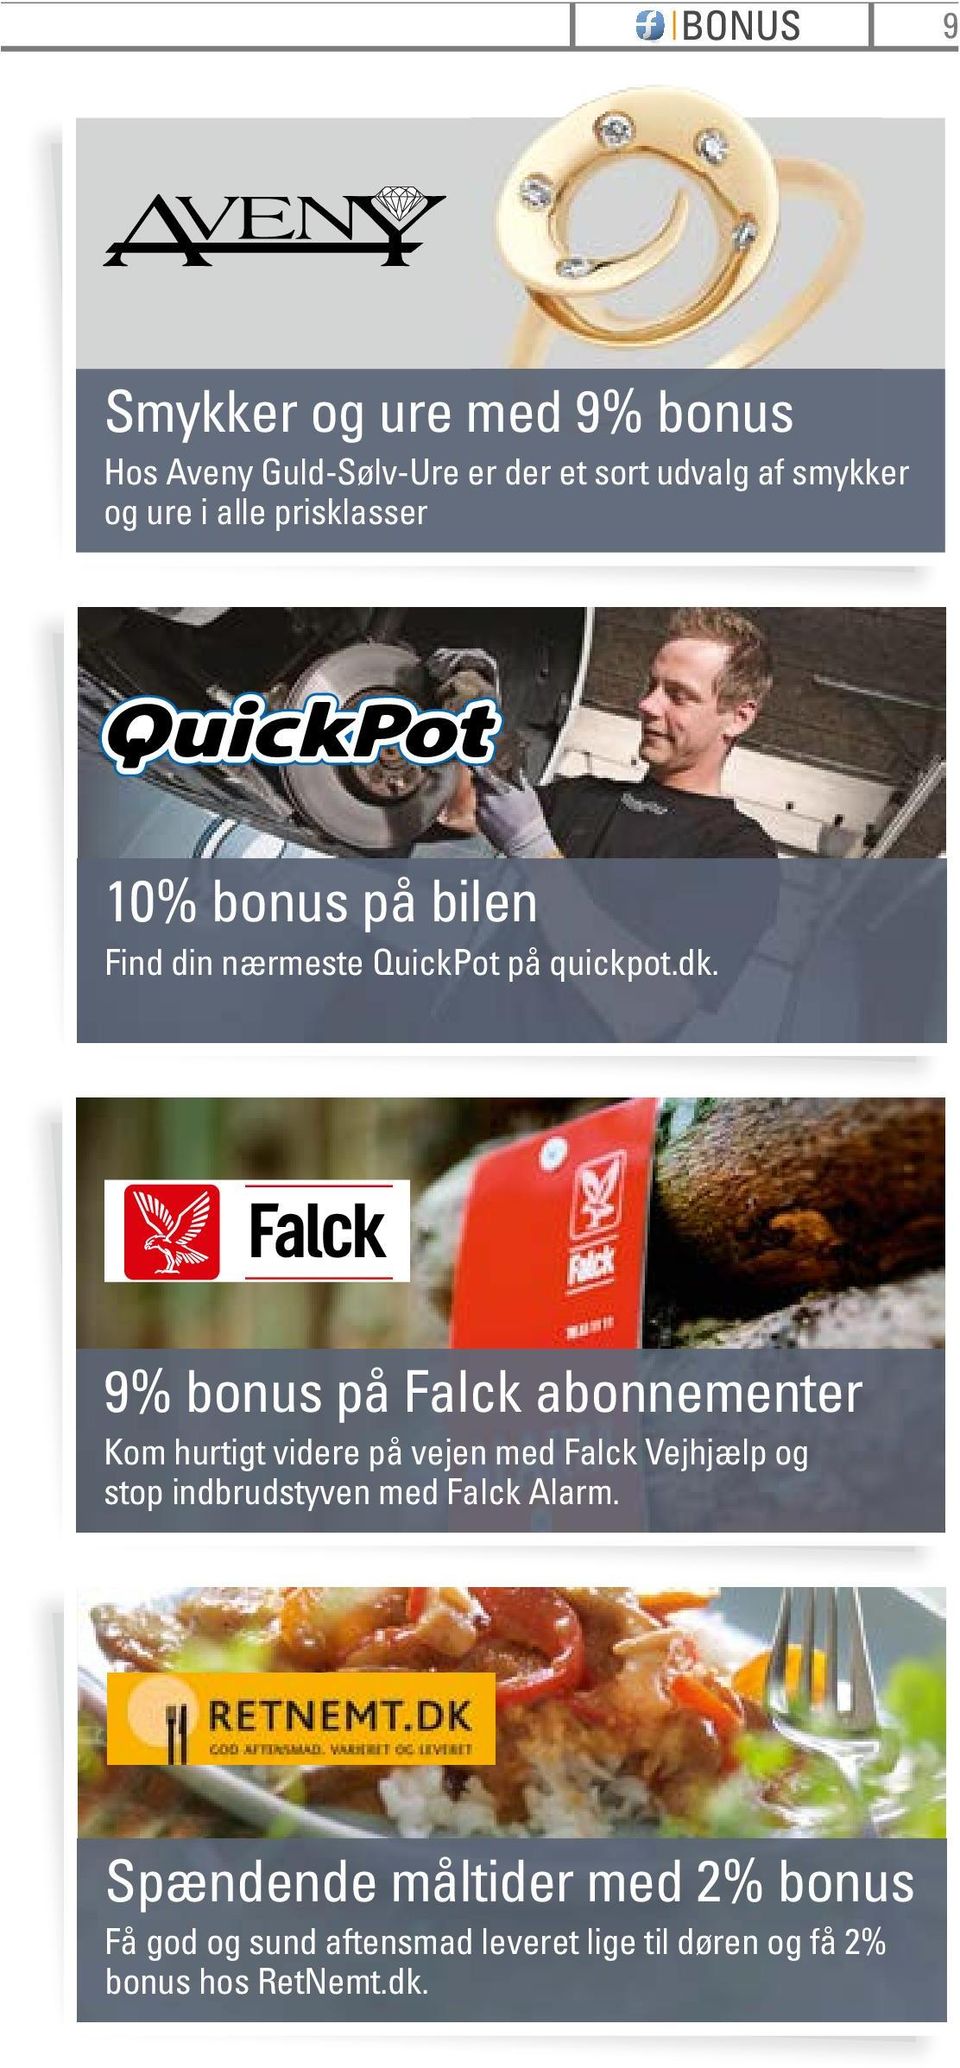 9% bonus på Falck abonnementer Kom hurtigt videre på vejen med Falck Vejhjælp og stop indbrudstyven